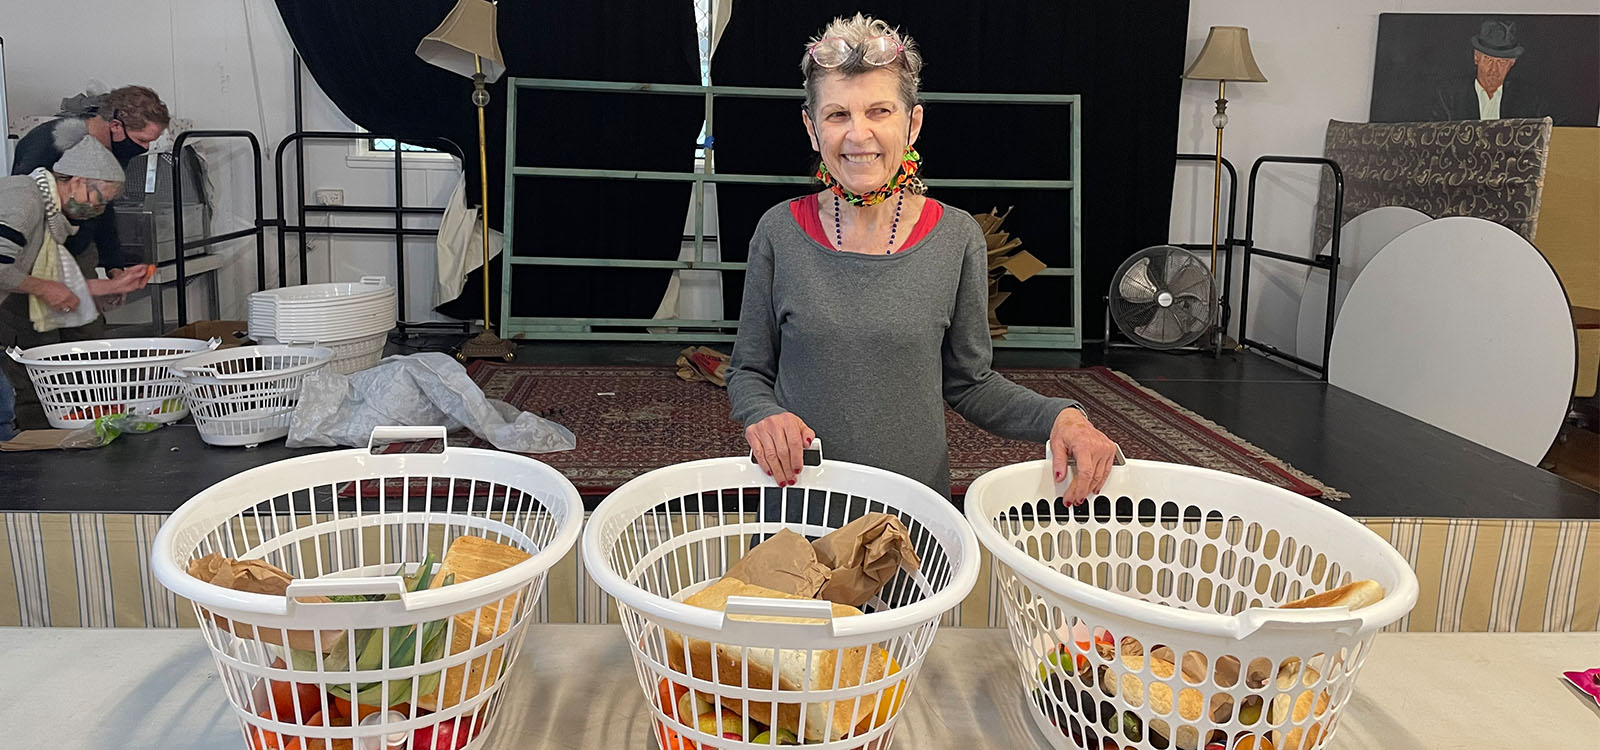 SANDBAG volunteer Gwen standing behind baskets of fresh food and bread 